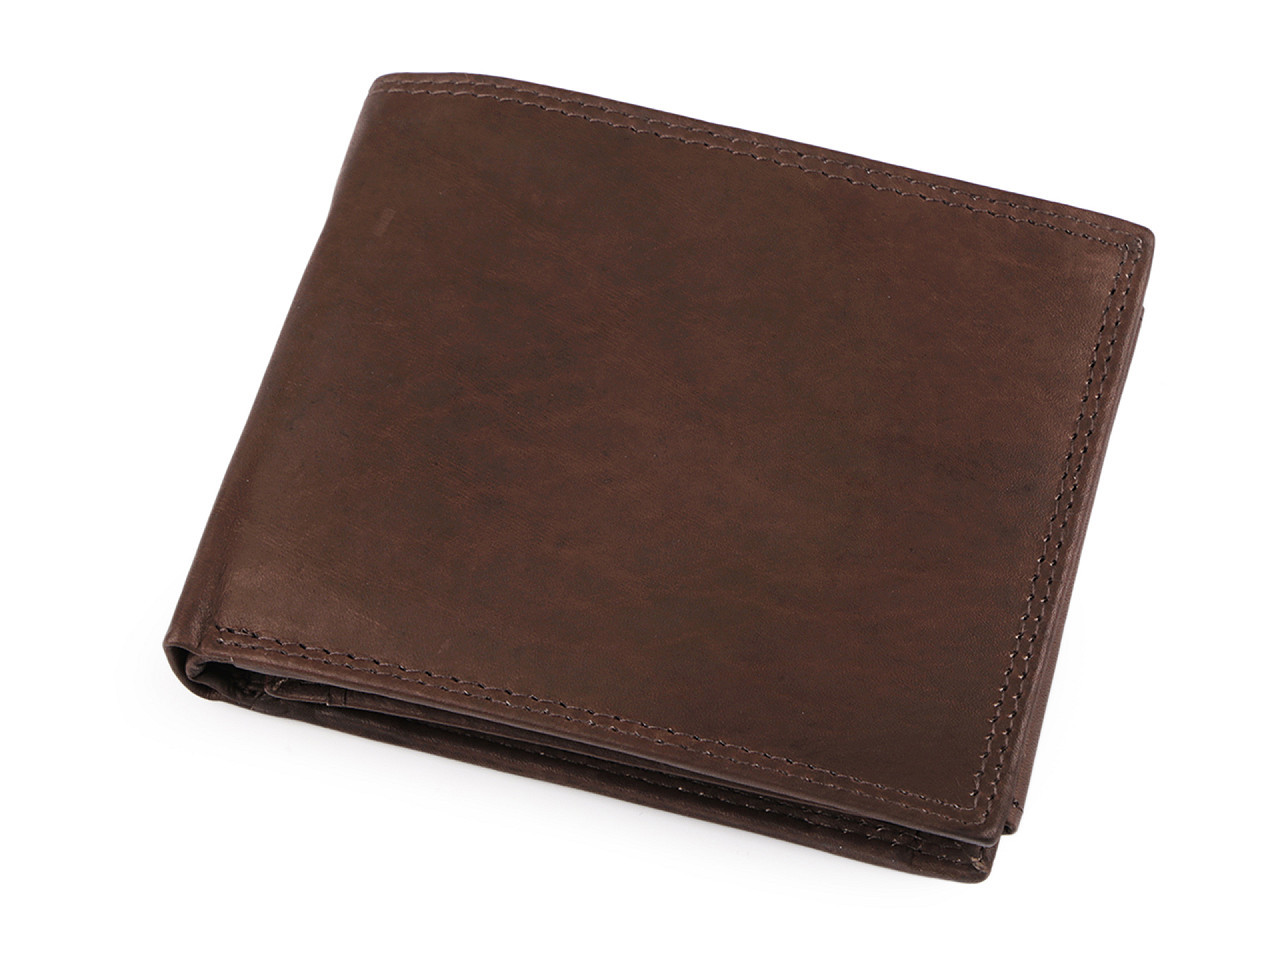 Pánská peněženka kožená, barva 6 hnědá čokoládová